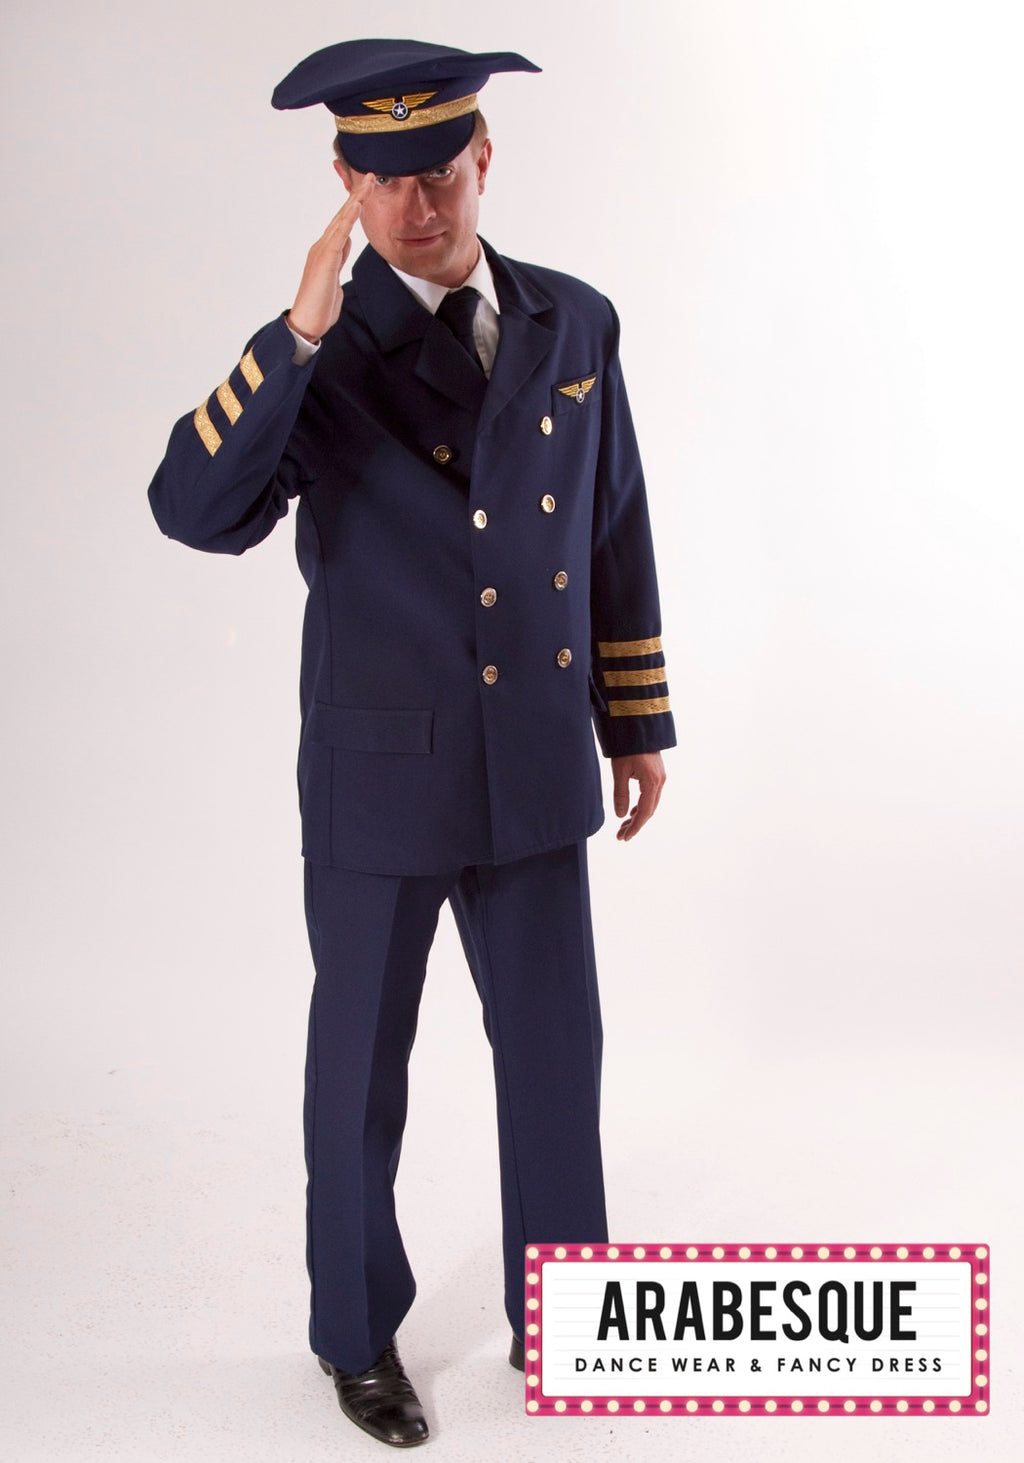 Mens Pilot Costume